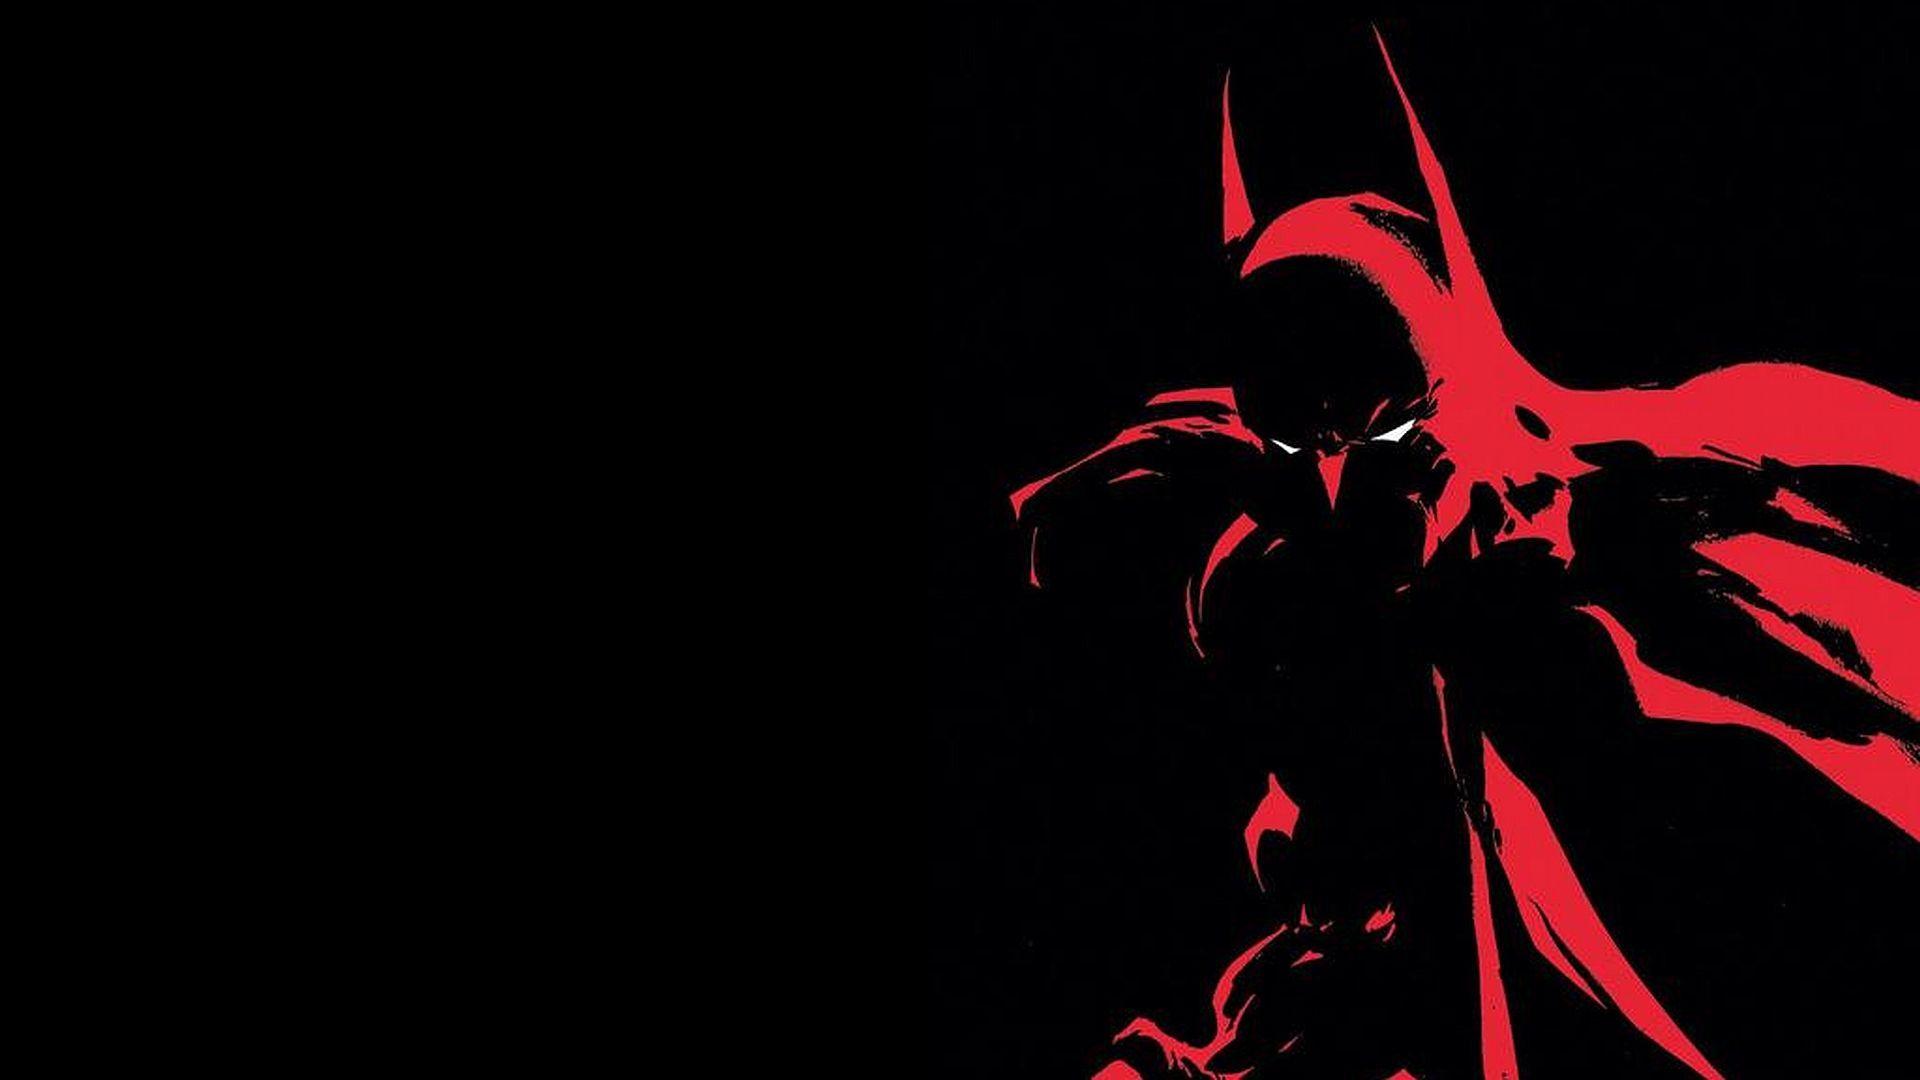 Black and Red Batman Logo - Black And Red Batman HD Wallpapers | design | Batman, Batman comic ...